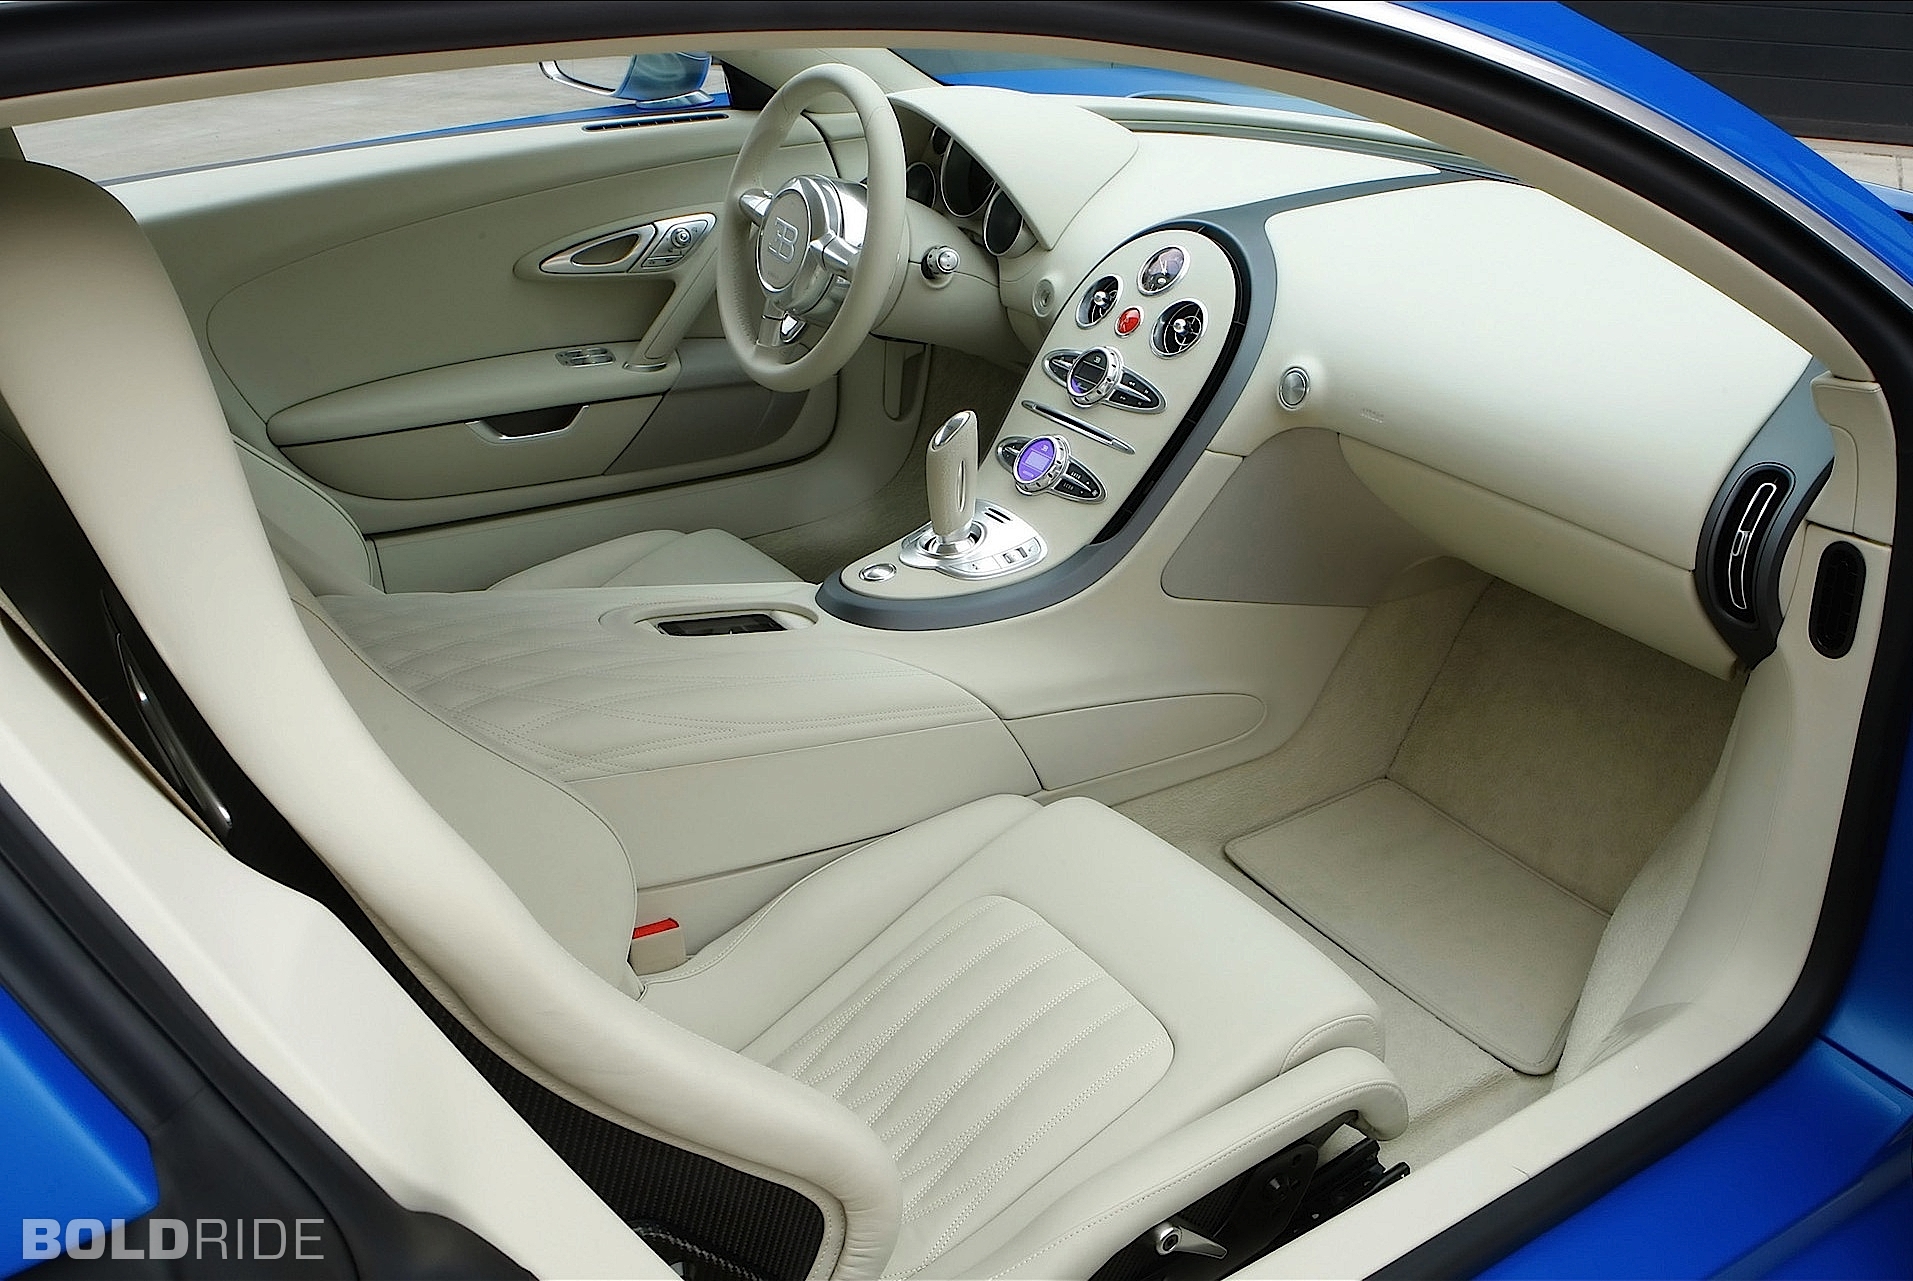 2009, Bugatti, Veyron, Bleu, Centenaire, Supercar, Supercars Wallpaper